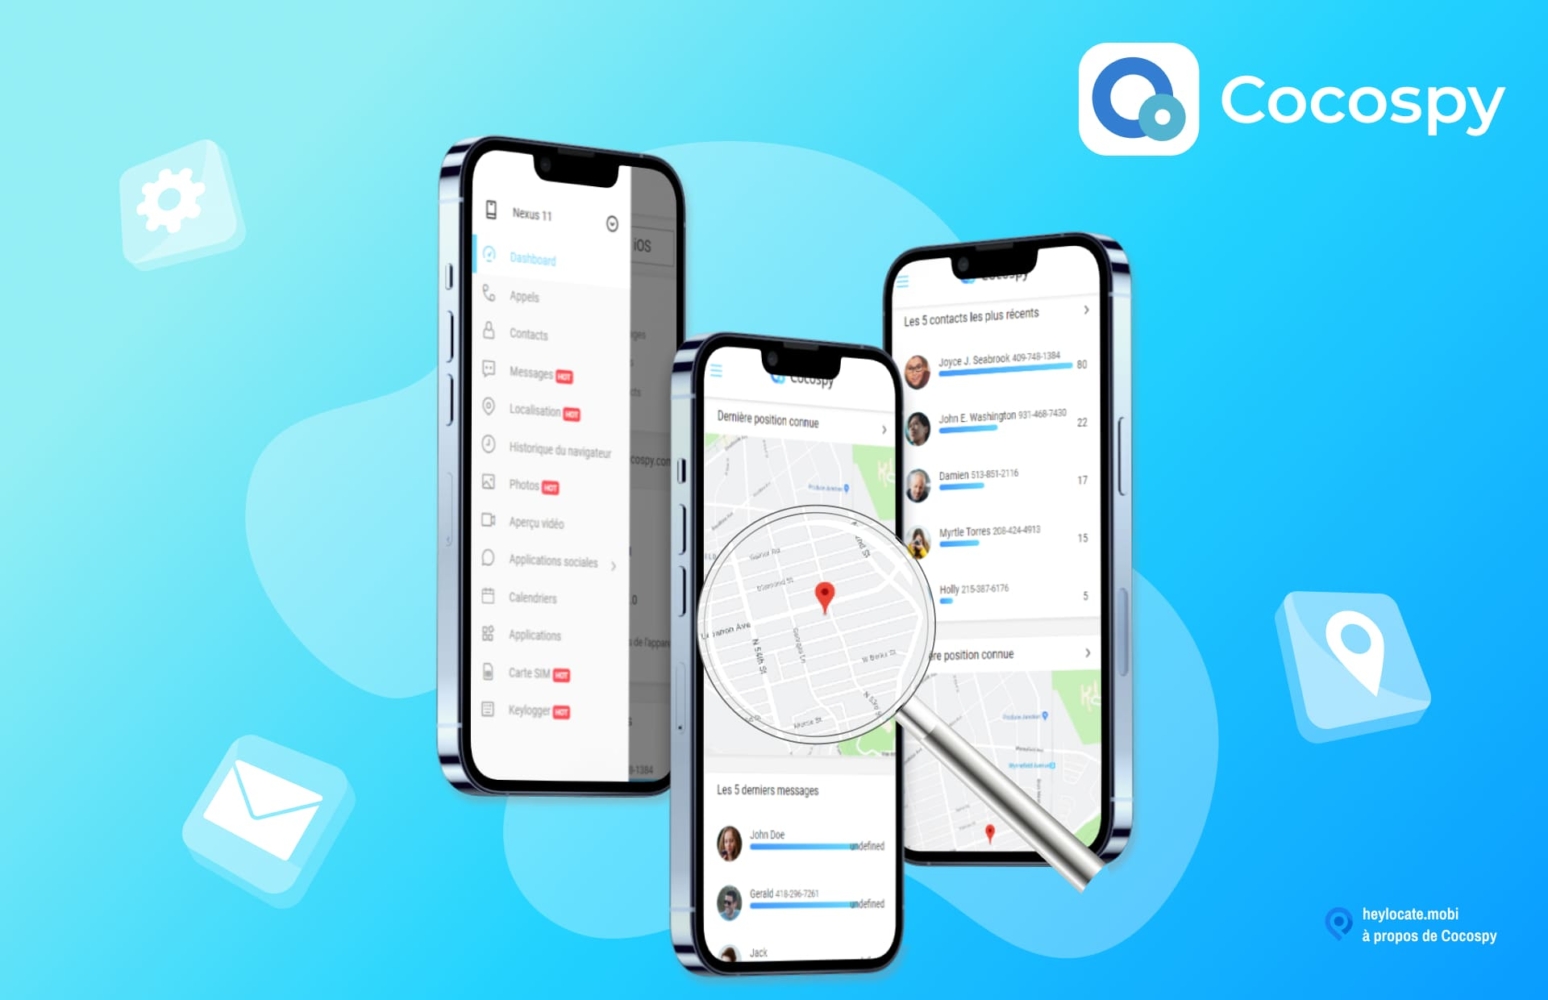 Image promotionnelle de Cocospy montrant l'interface de l'application sur les smartphones. L'interface comprend des options telles que les appels, les messages, les emplacements et une carte montrant un emplacement.